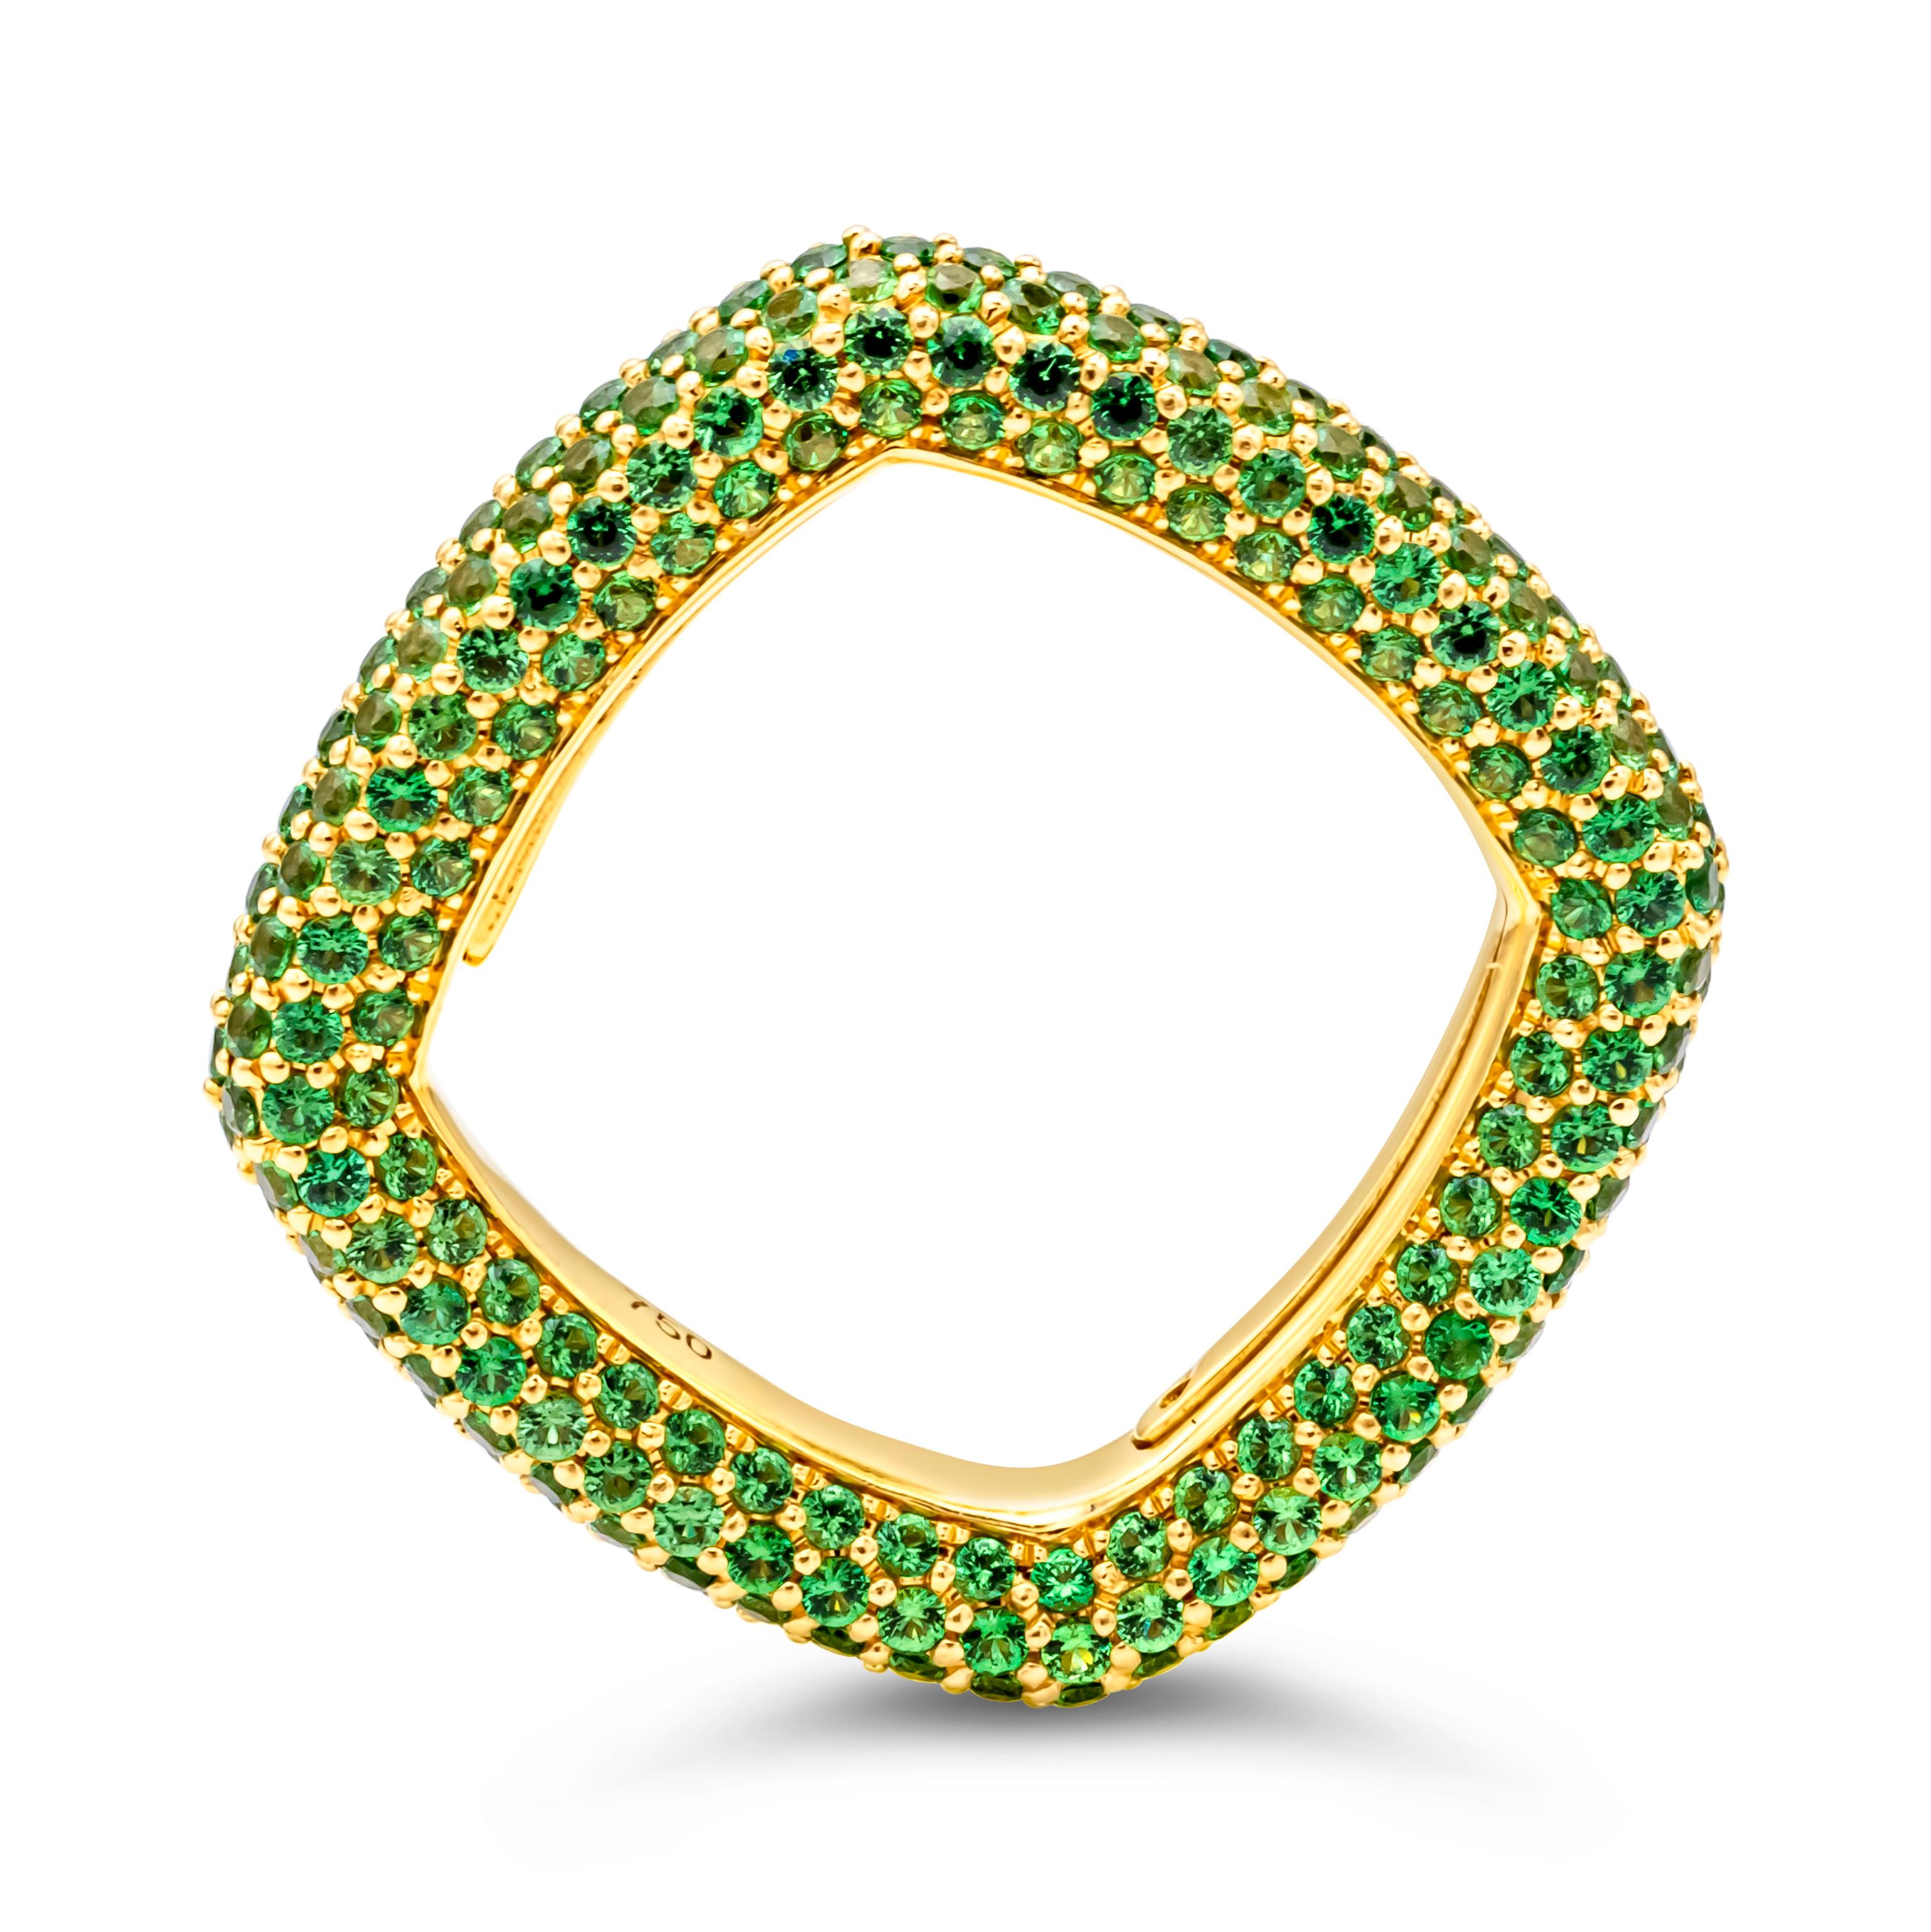 Dieser modische und farbenfrohe Ring präsentiert 340 runde, brillante grüne Granate (Tsavorite) mit einem Gesamtgewicht von 3,42 Karat, gefasst in einer schönen quadratischen Mikropave-Fassung und einer gemeinsamen Zackenfassung. Fein gemacht in 18k